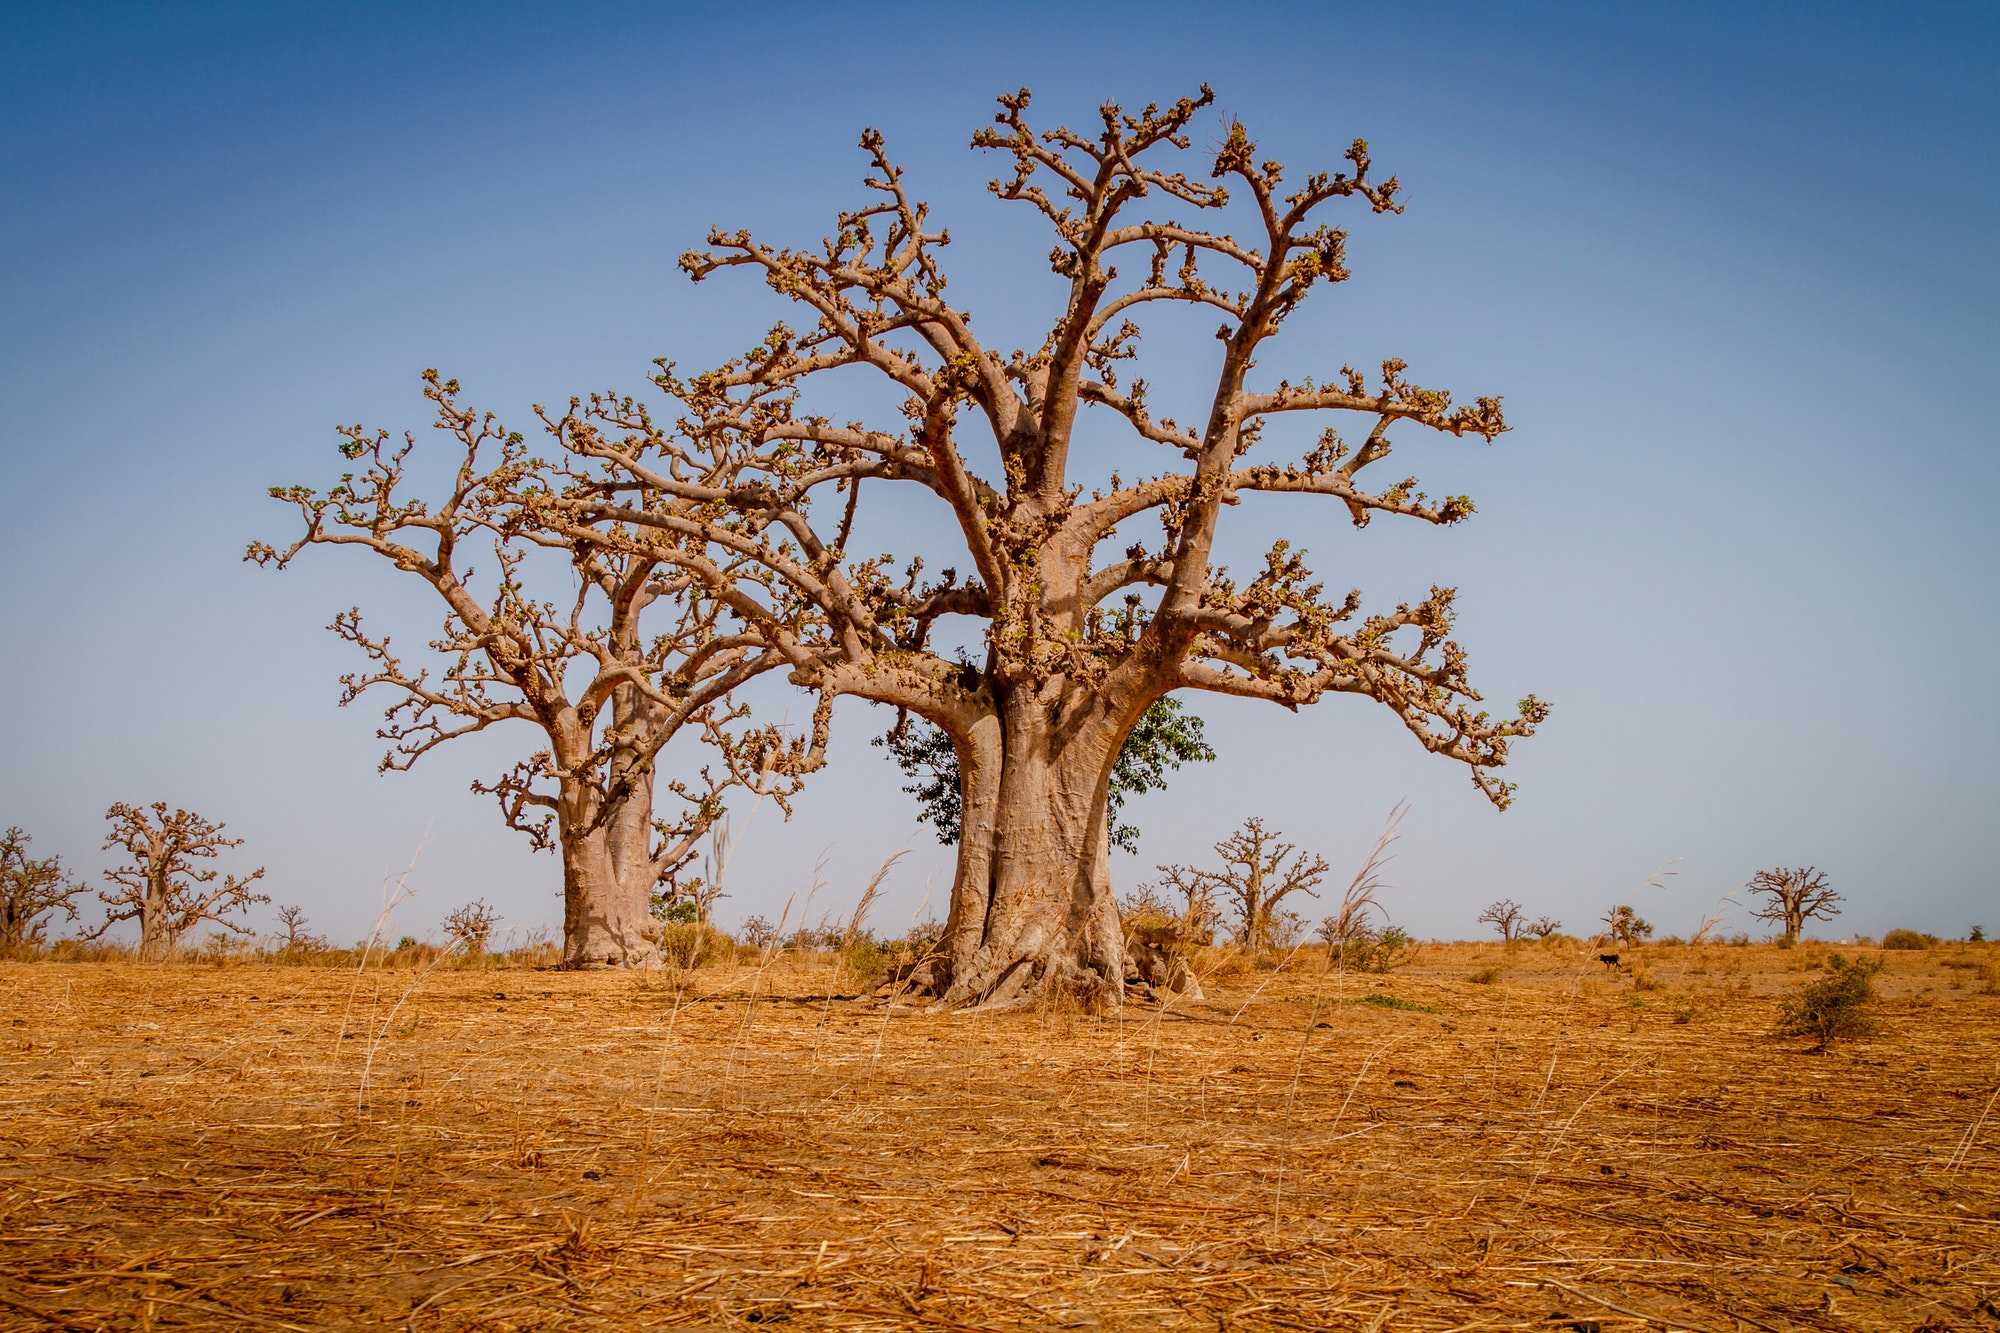 Two huge baobab trees in the dry sandy savannah of Senegal in Africa. Impressive wonder of nature.